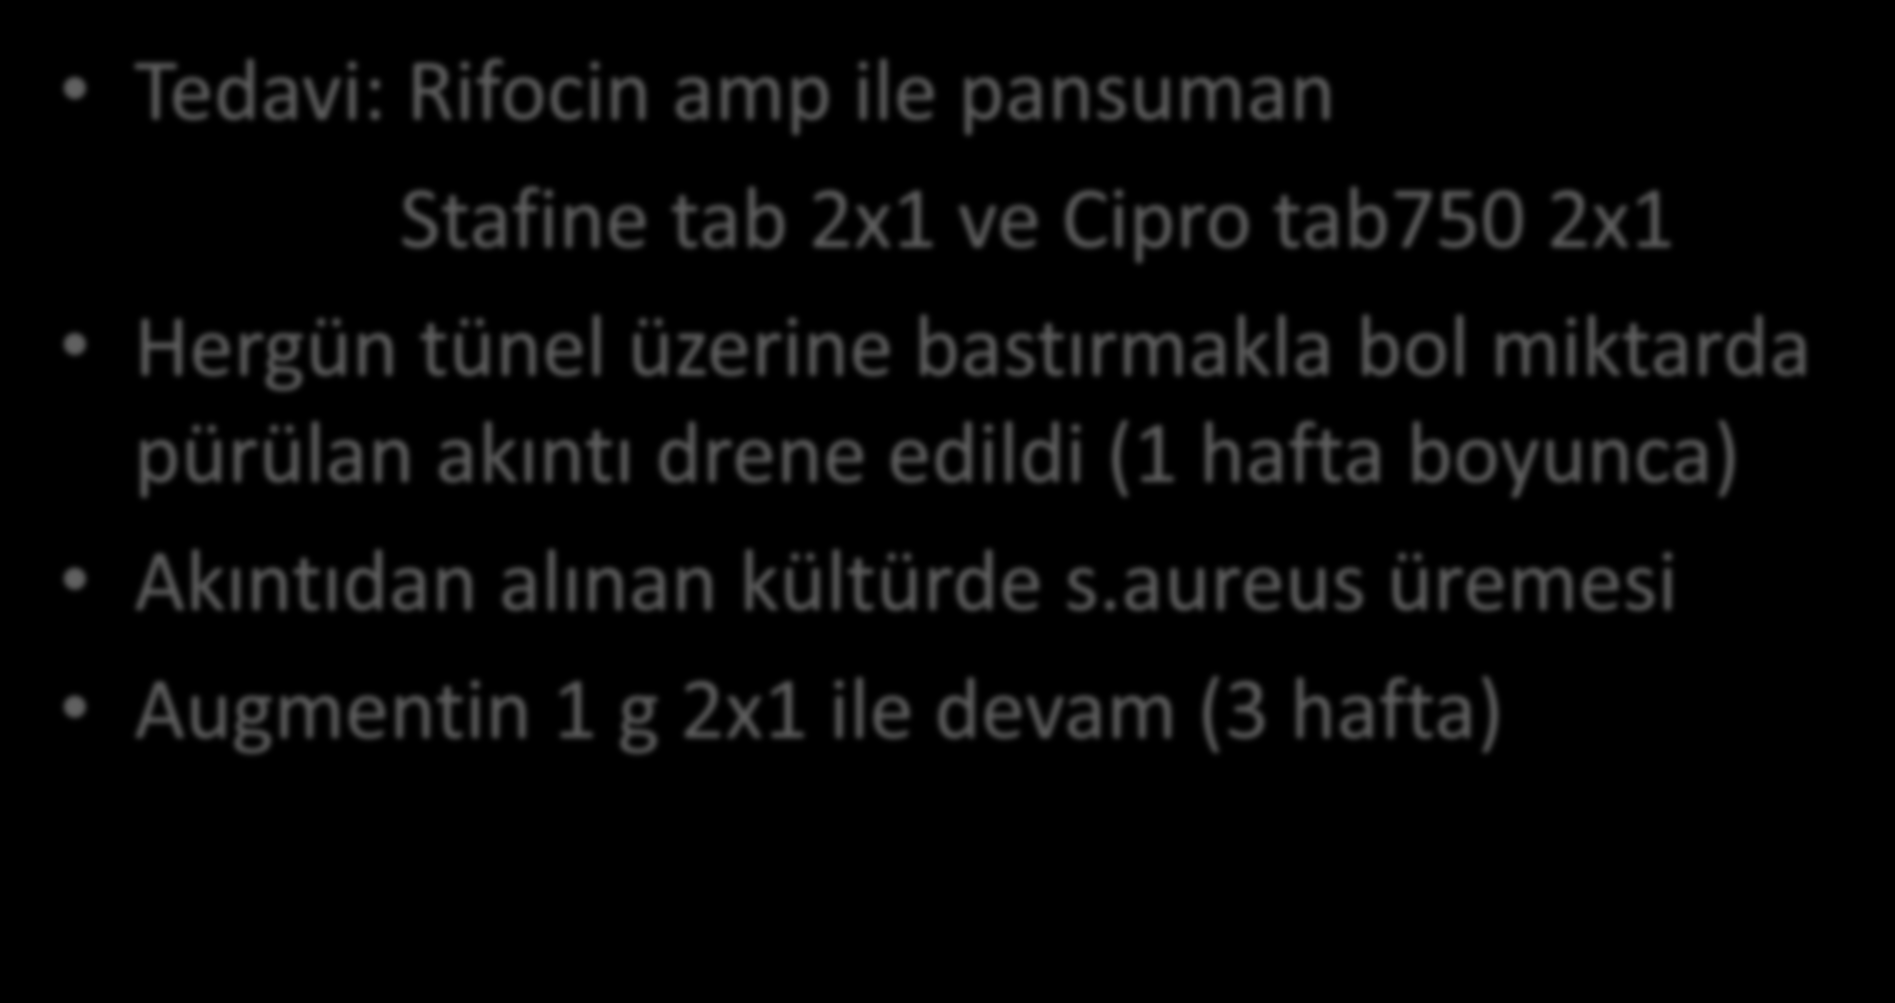 OLGU 4 Tedavi: Rifocin amp ile pansuman Stafine tab 2x1 ve Cipro tab750 2x1 Hergün tünel üzerine bastırmakla bol miktarda